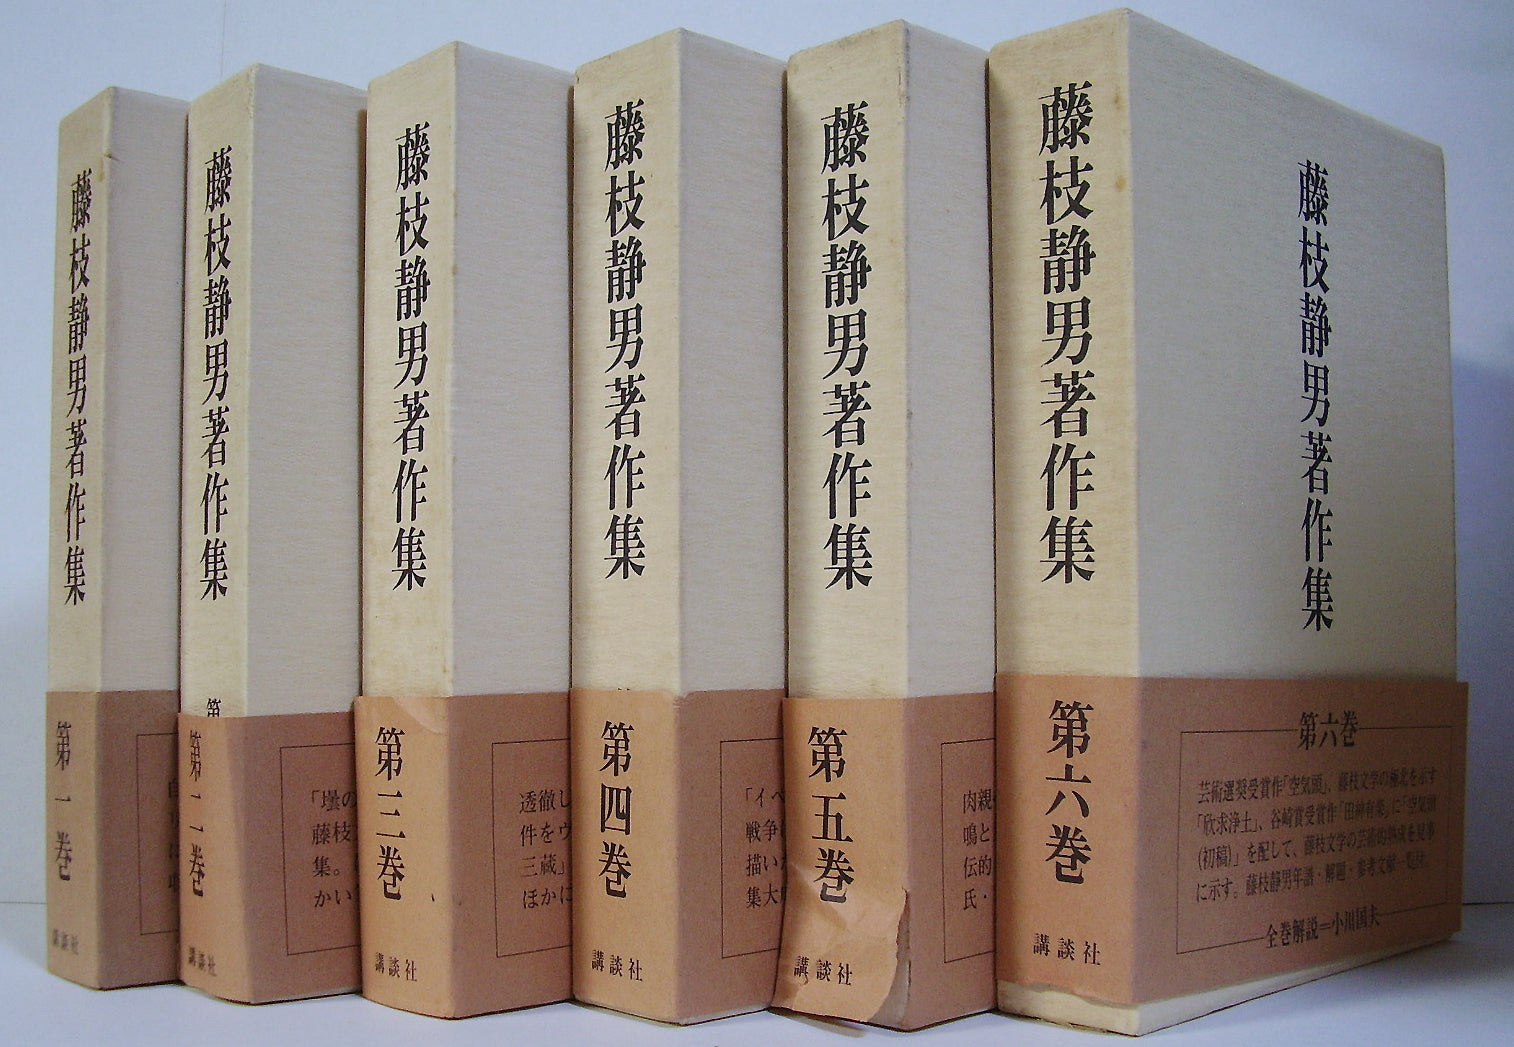 全て初版》「城山三郎伝記文学選」全6巻セット 函入り単行本 | www